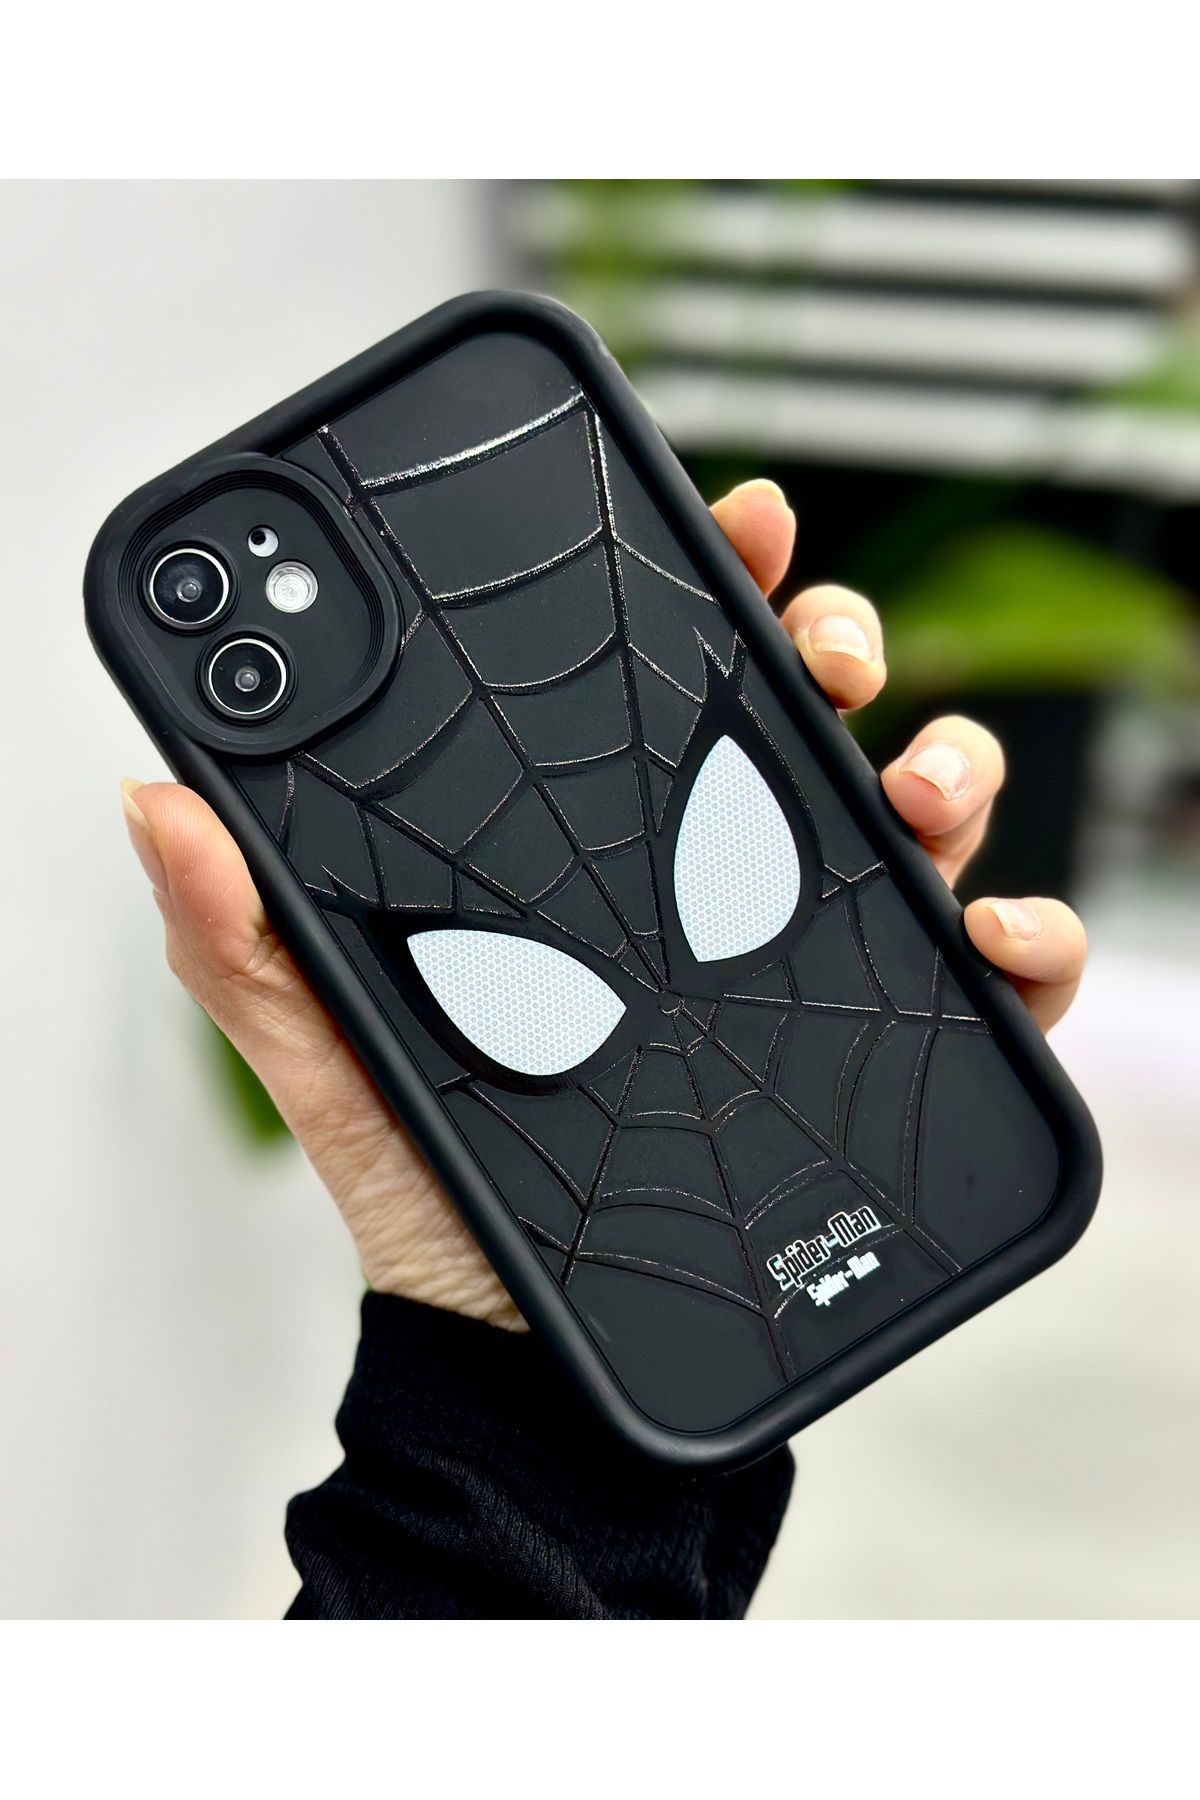 Go Aksesuar Iphone 11 Uyumlu Darbe Önleyici SpiderMan BASKILI Silikon Kılıf